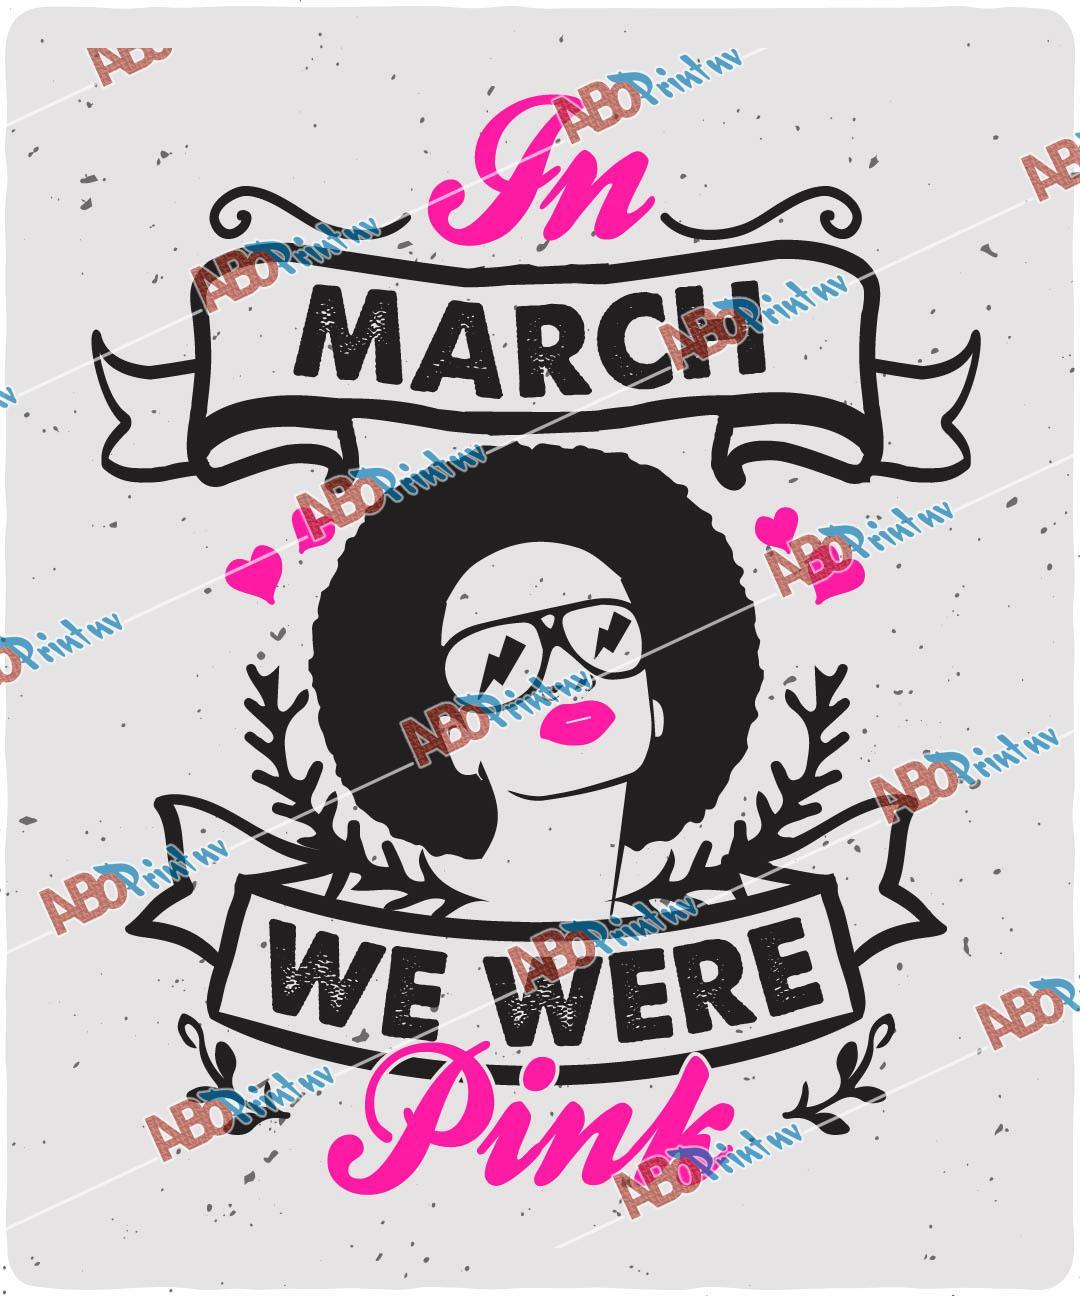 In March we were pink.jpg